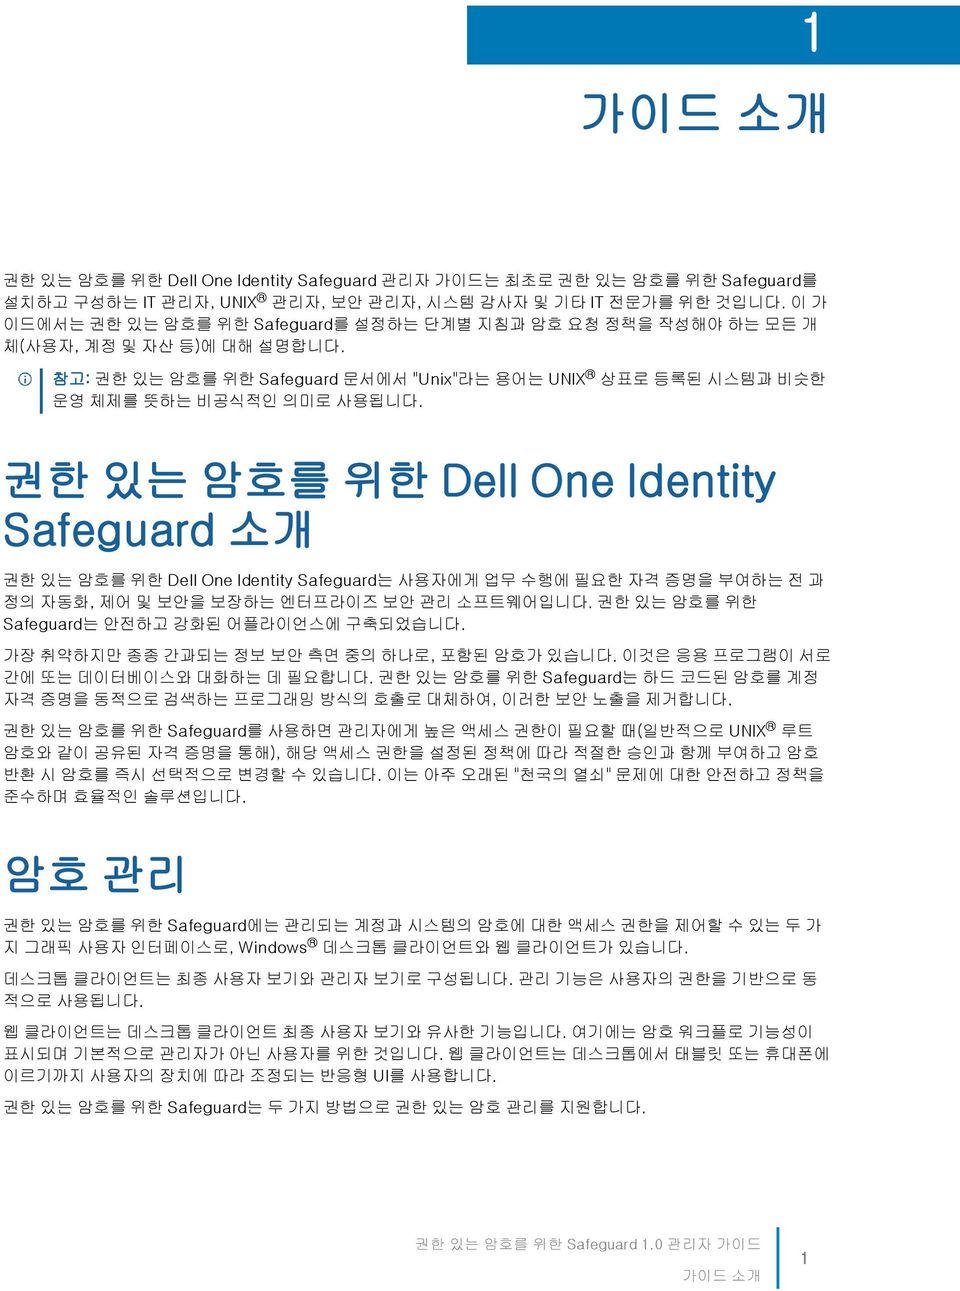 권한 있는 암호를 위한 Dell One Identity Safeguard 소개 권한 있는 암호를 위한 Dell One Identity Safeguard는 사용자에게 업무 수행에 필요한 자격 증명을 부여하는 전 과 정의 자동화, 제어 및 보안을 보장하는 엔터프라이즈 보안 관리 소프트웨어입니다.